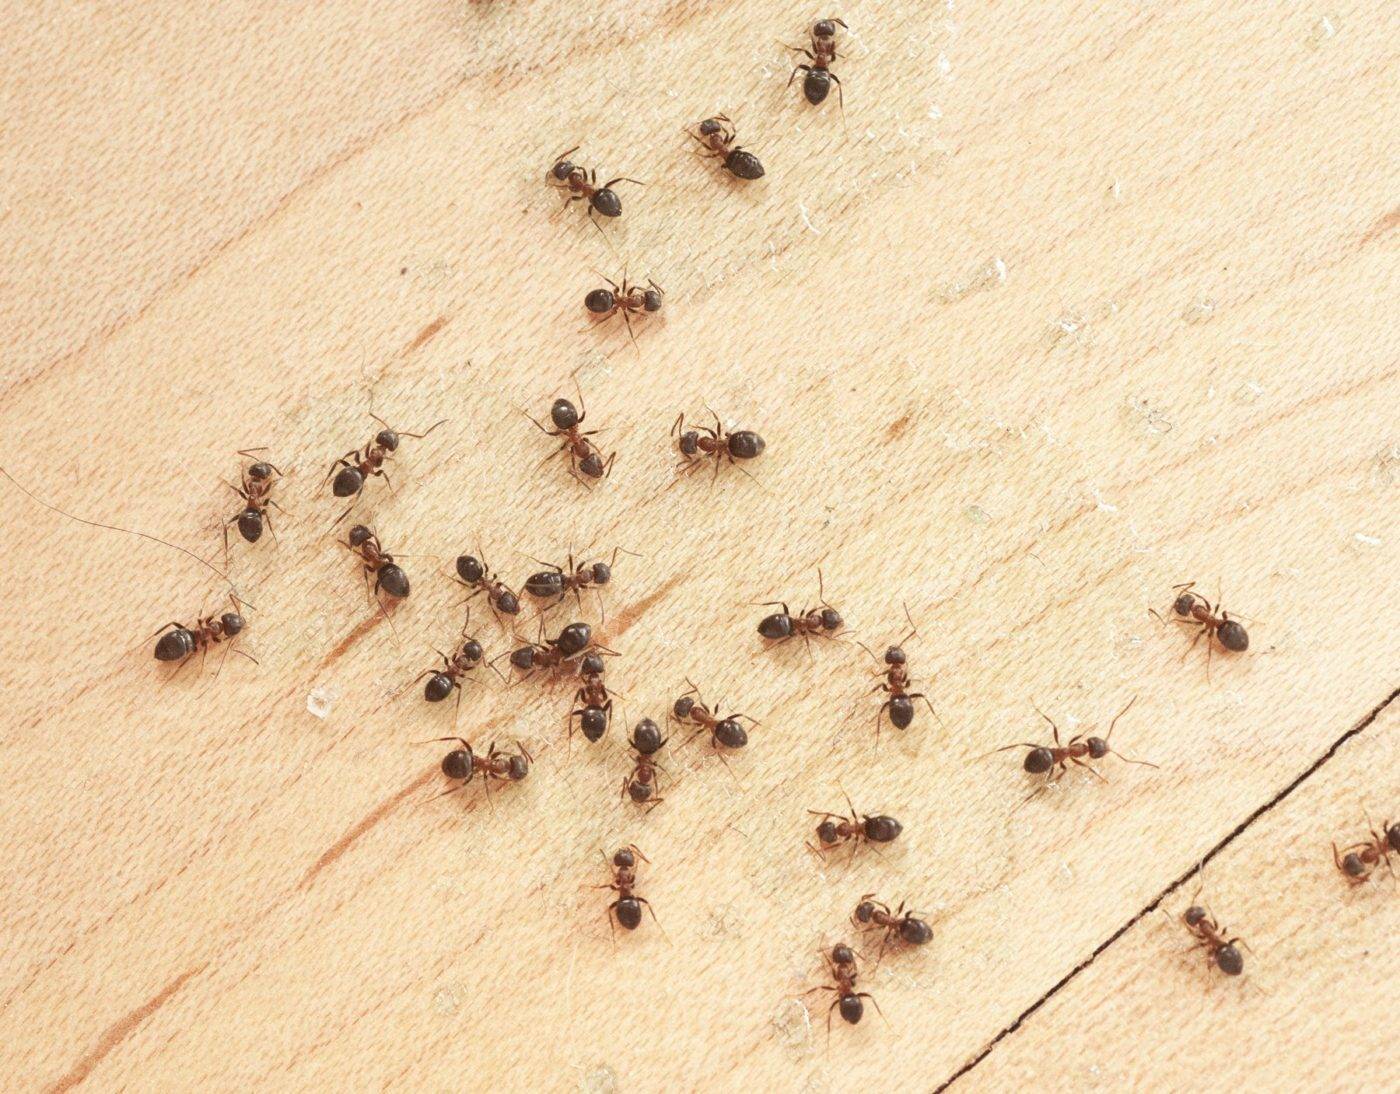 Народные и готовые средства от муравьев в квартире